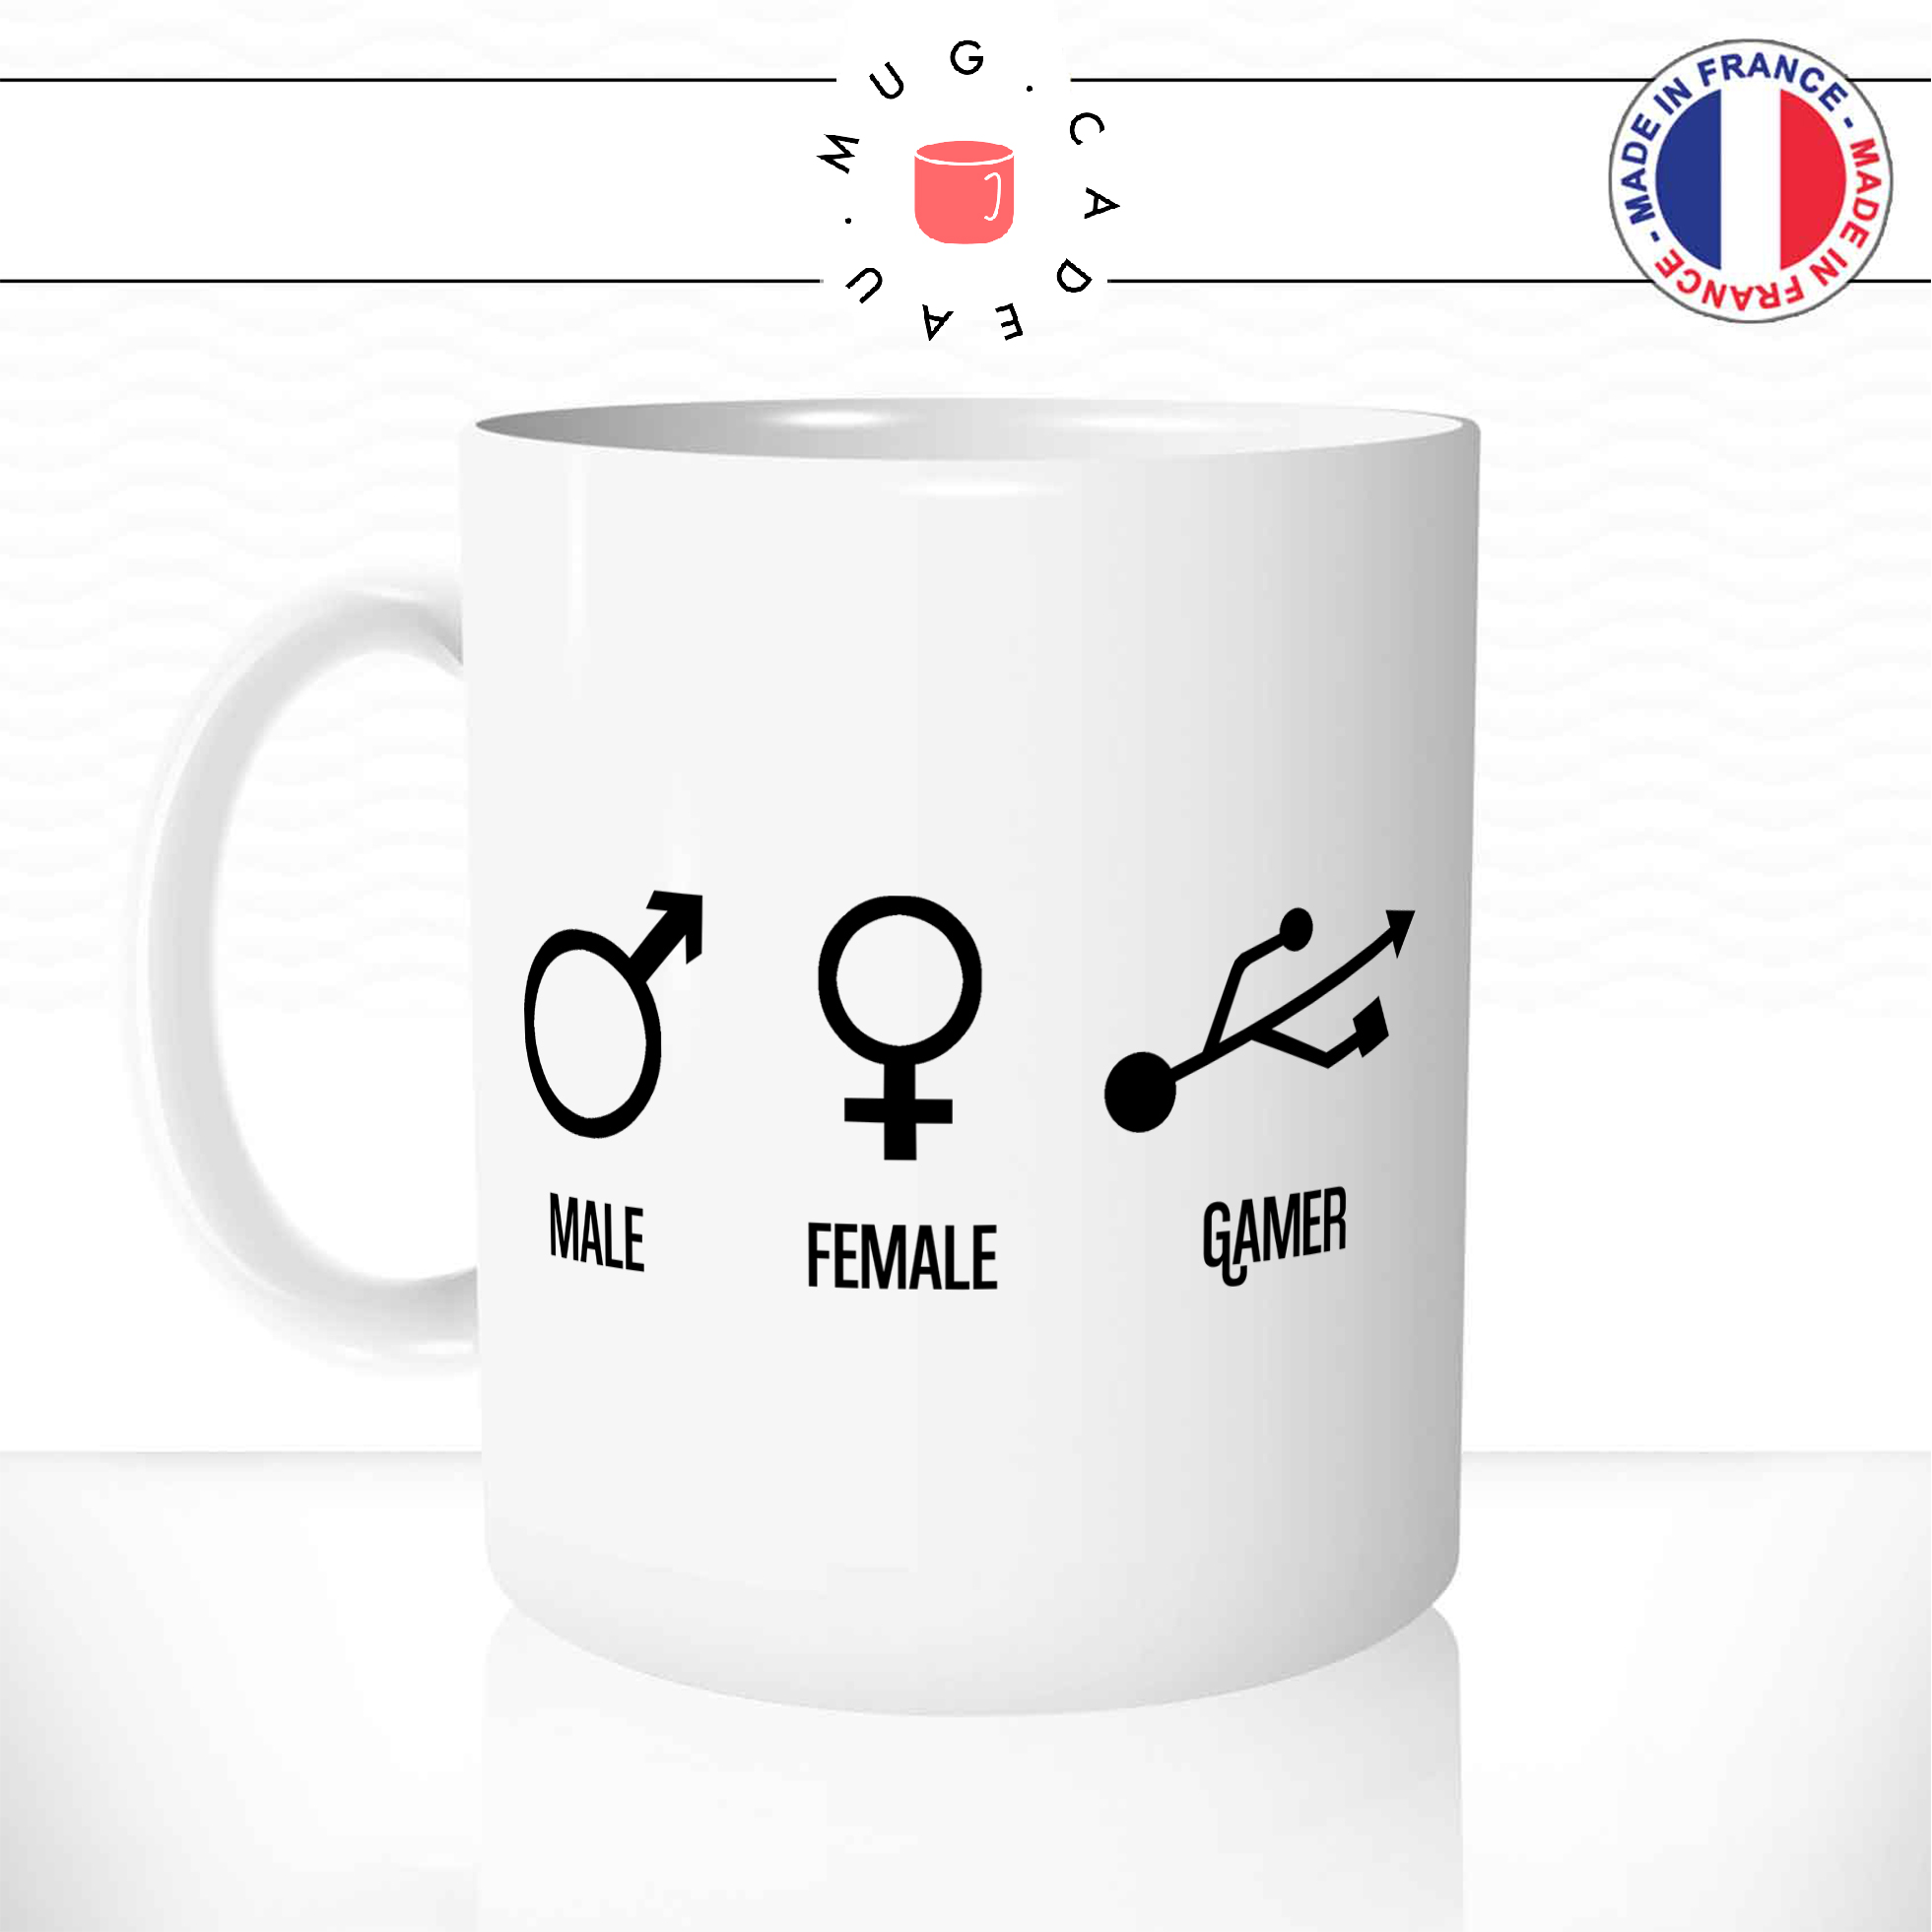 Mug Male Female Gamer